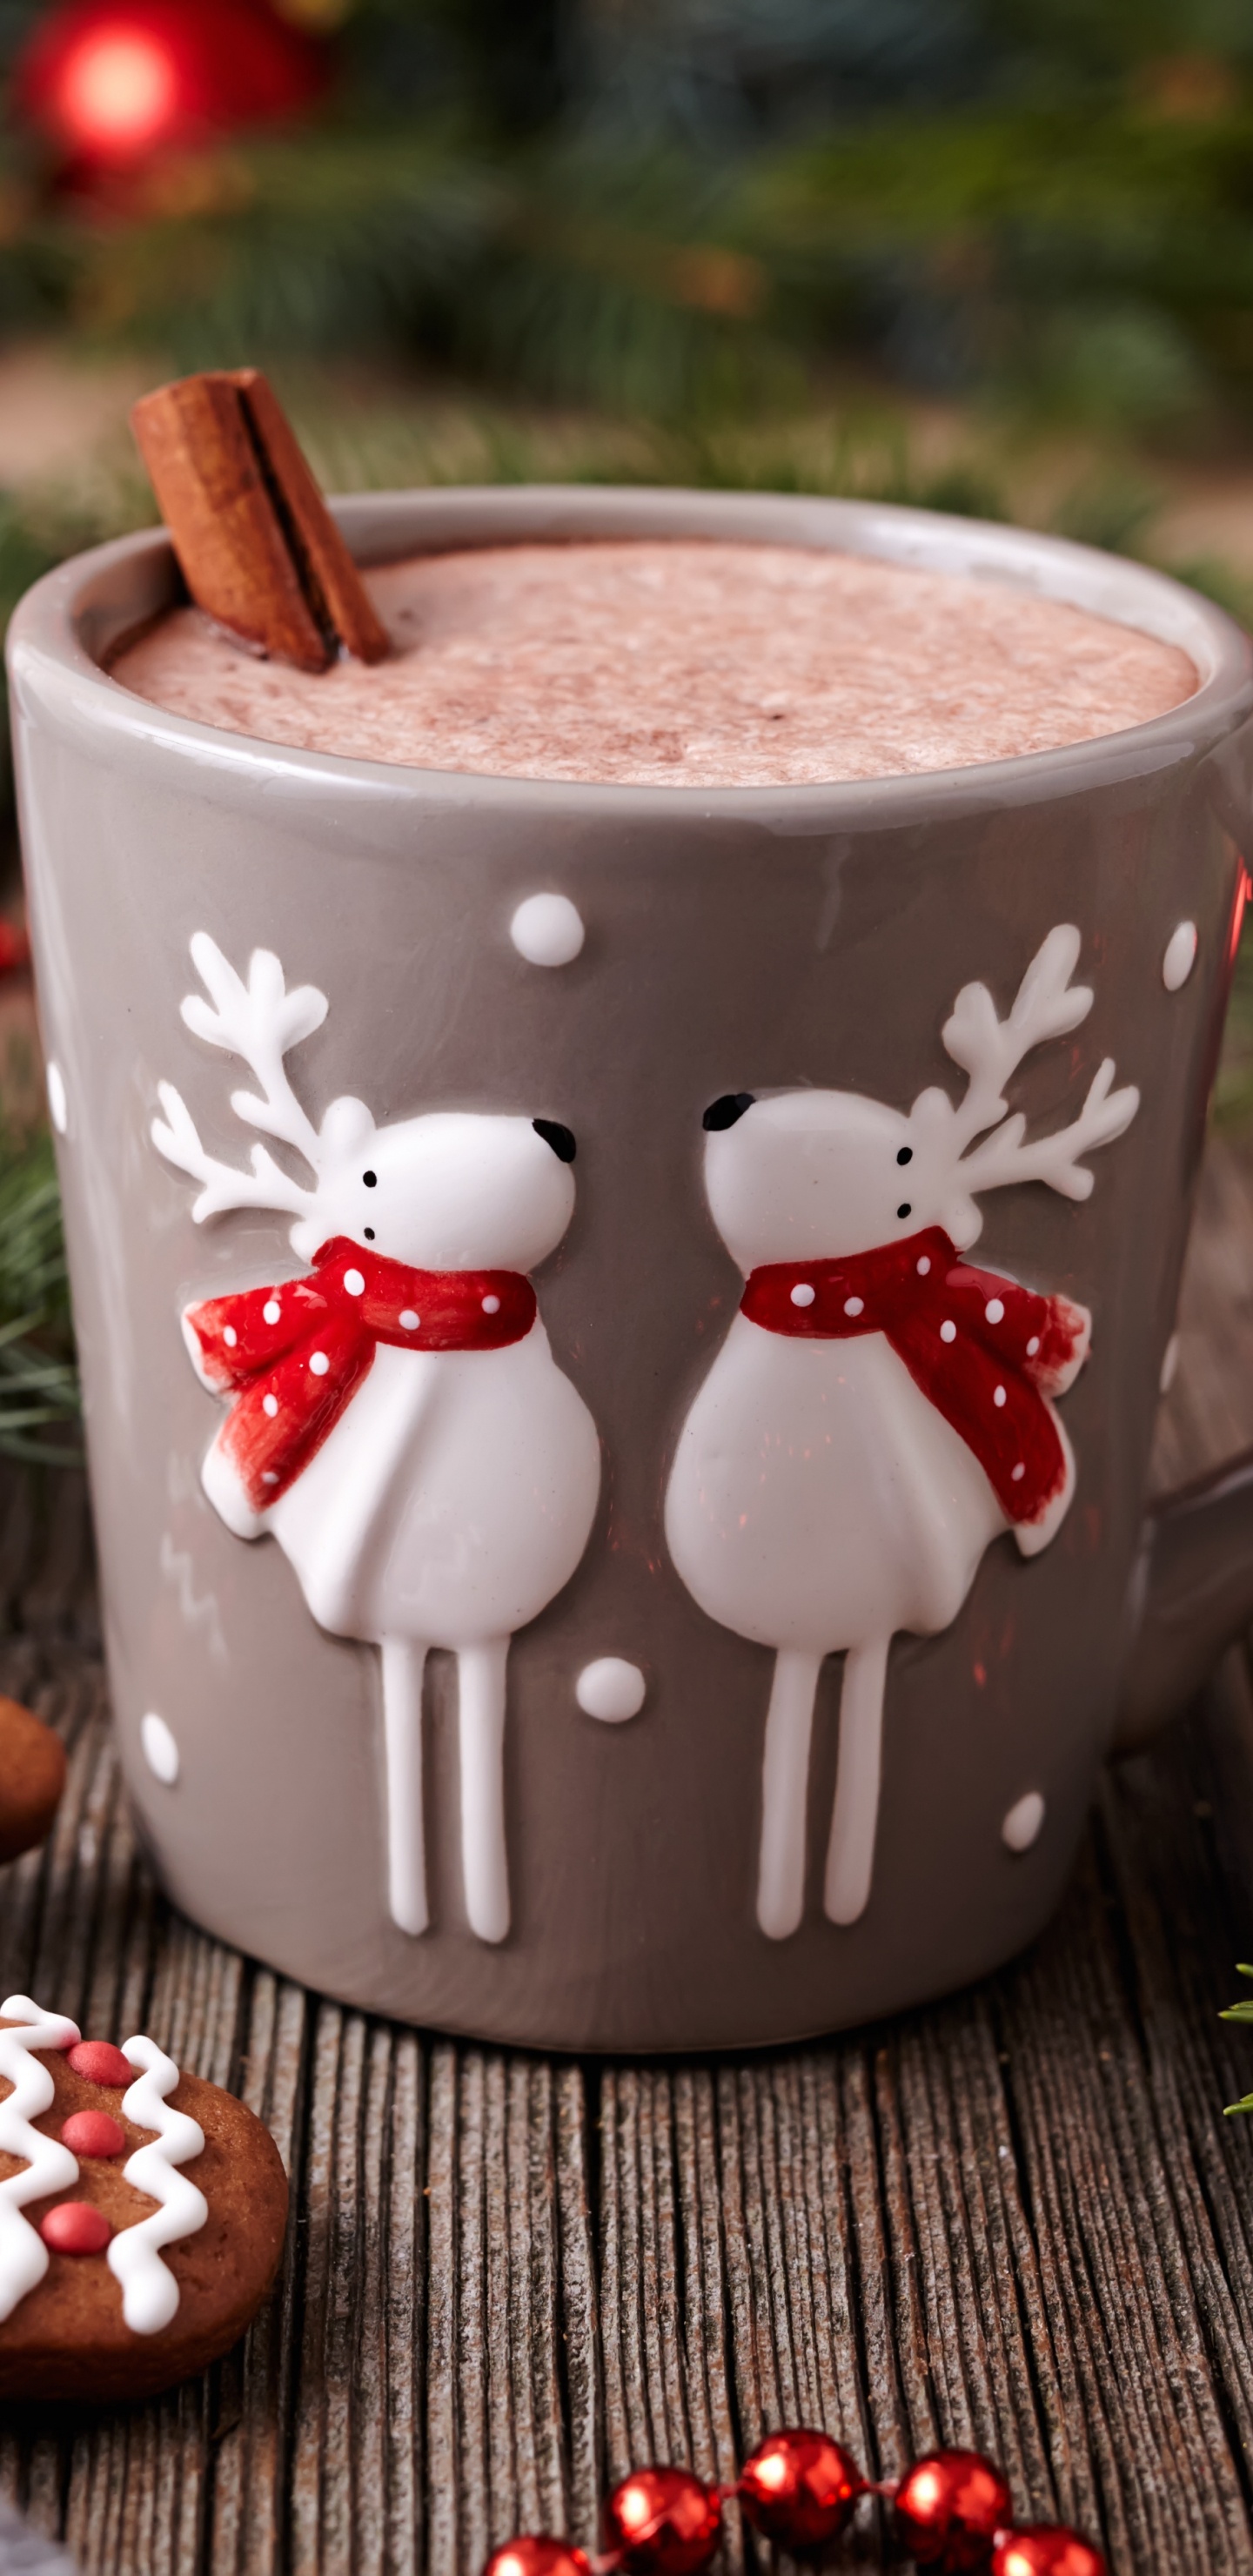 Weihnachten, Kaffeetasse, Cup, Lebkuchen, Drinkware. Wallpaper in 1440x2960 Resolution